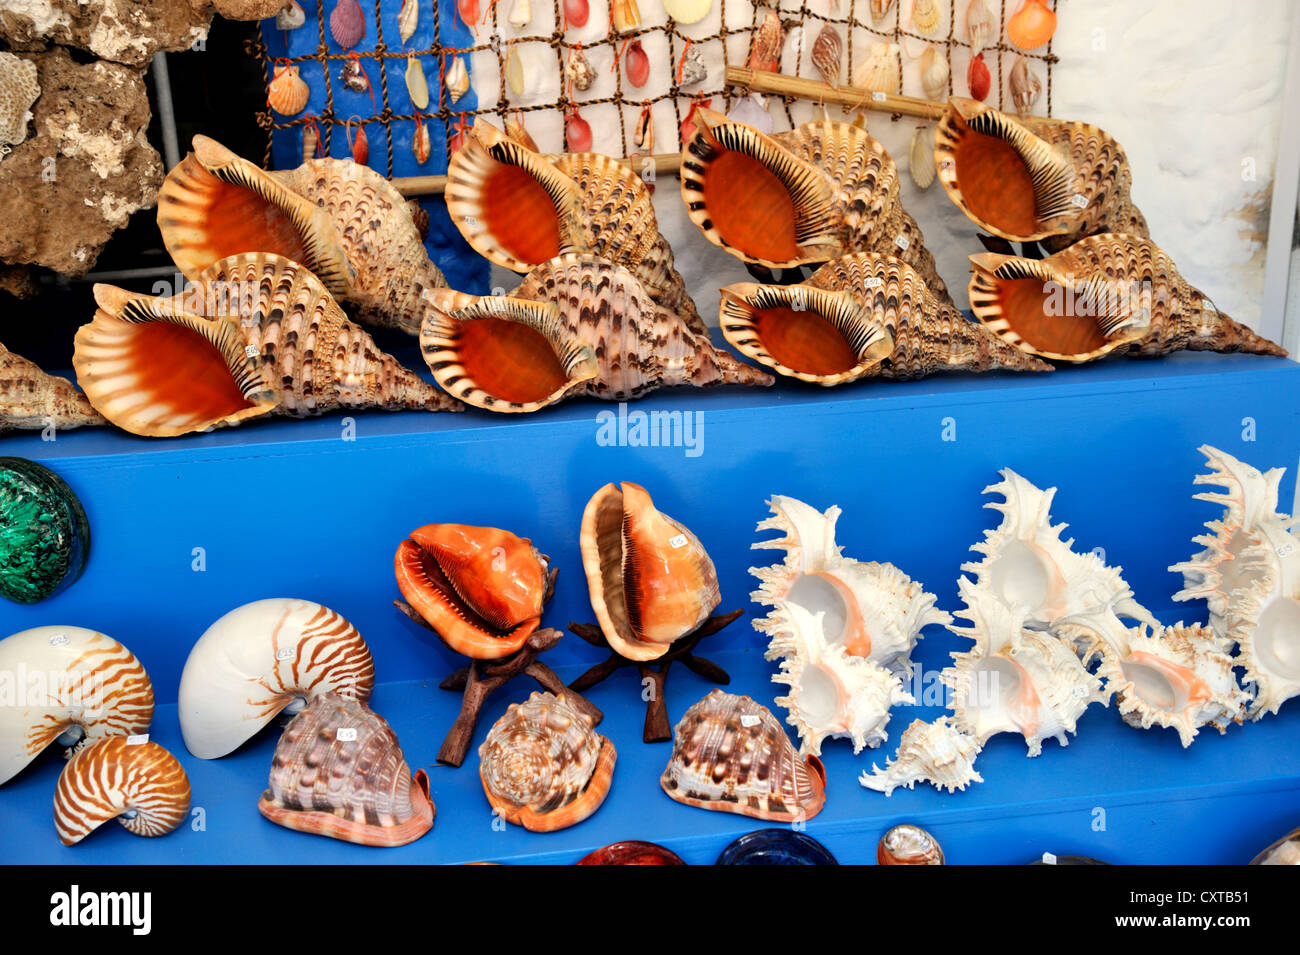 Sea shells on display for sale, Kos island, Greece Stock Photo